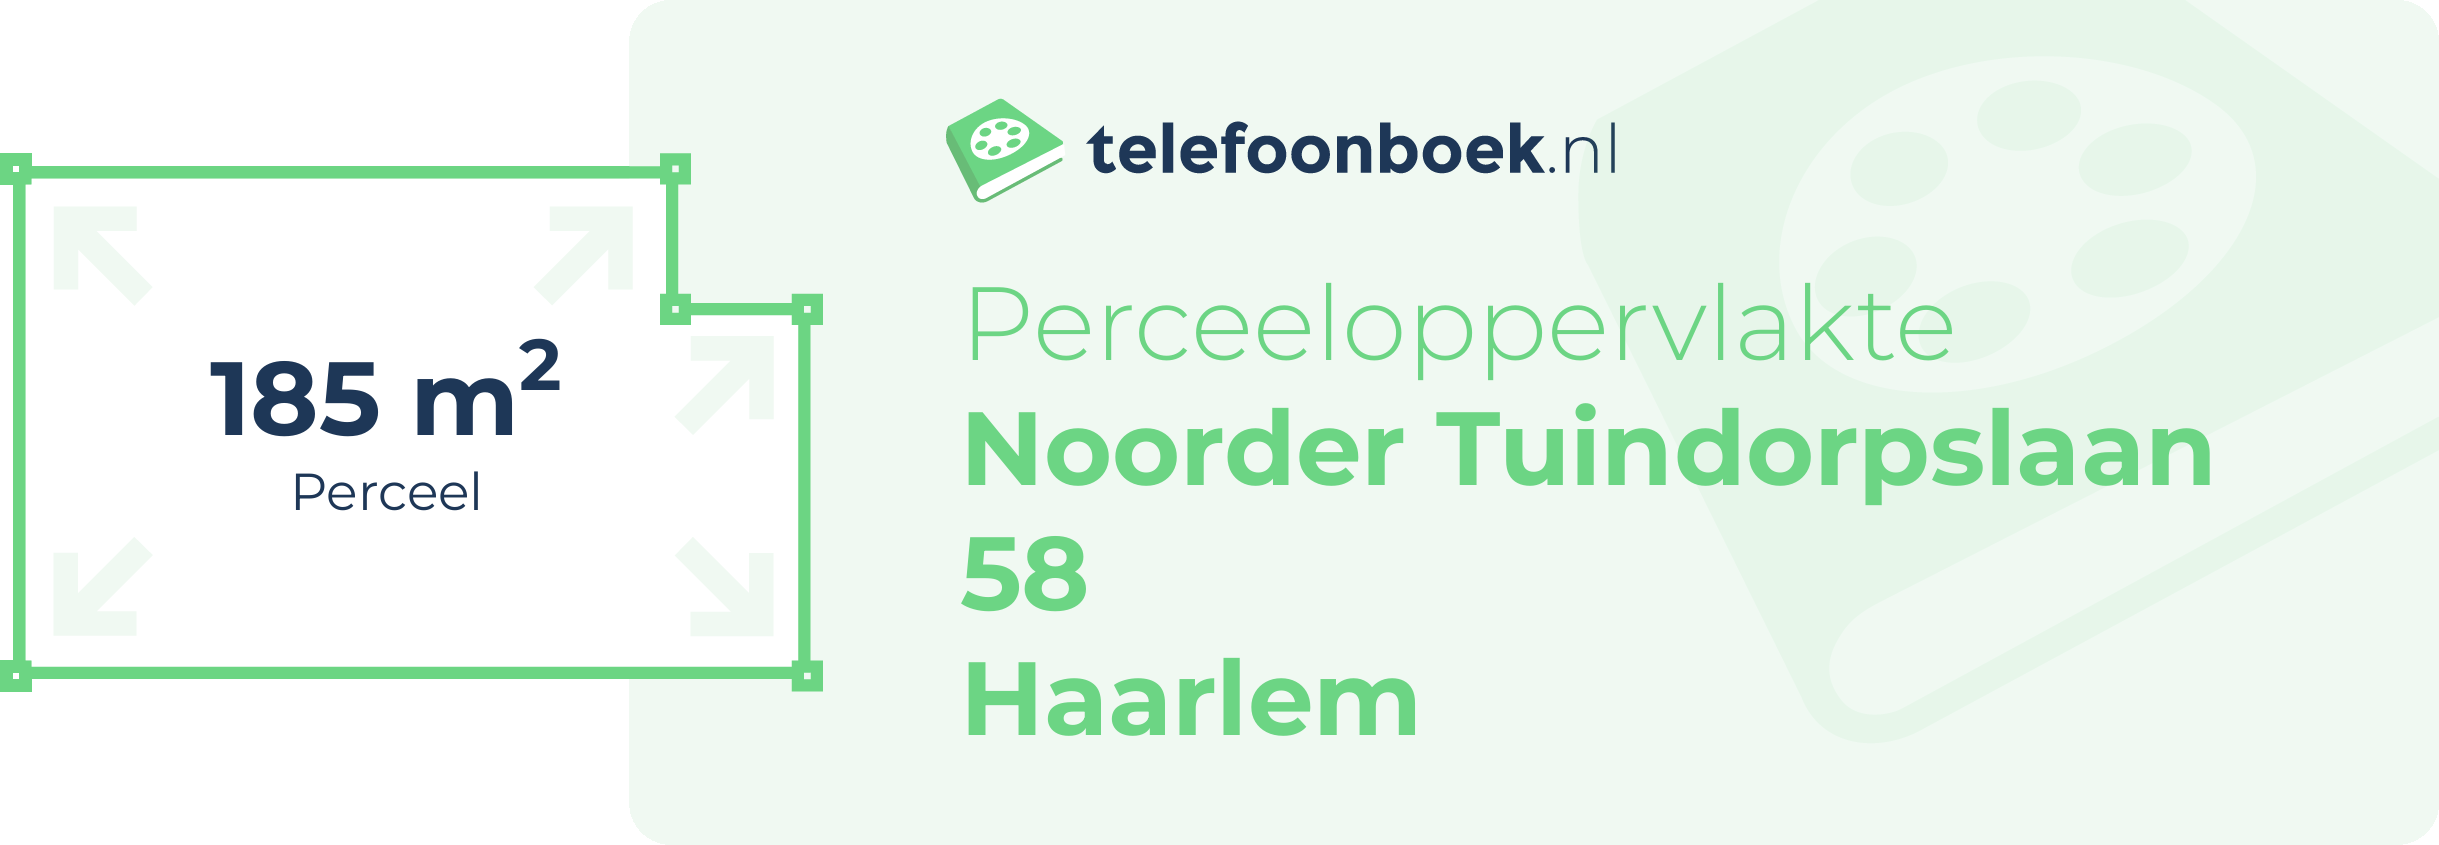 Perceeloppervlakte Noorder Tuindorpslaan 58 Haarlem